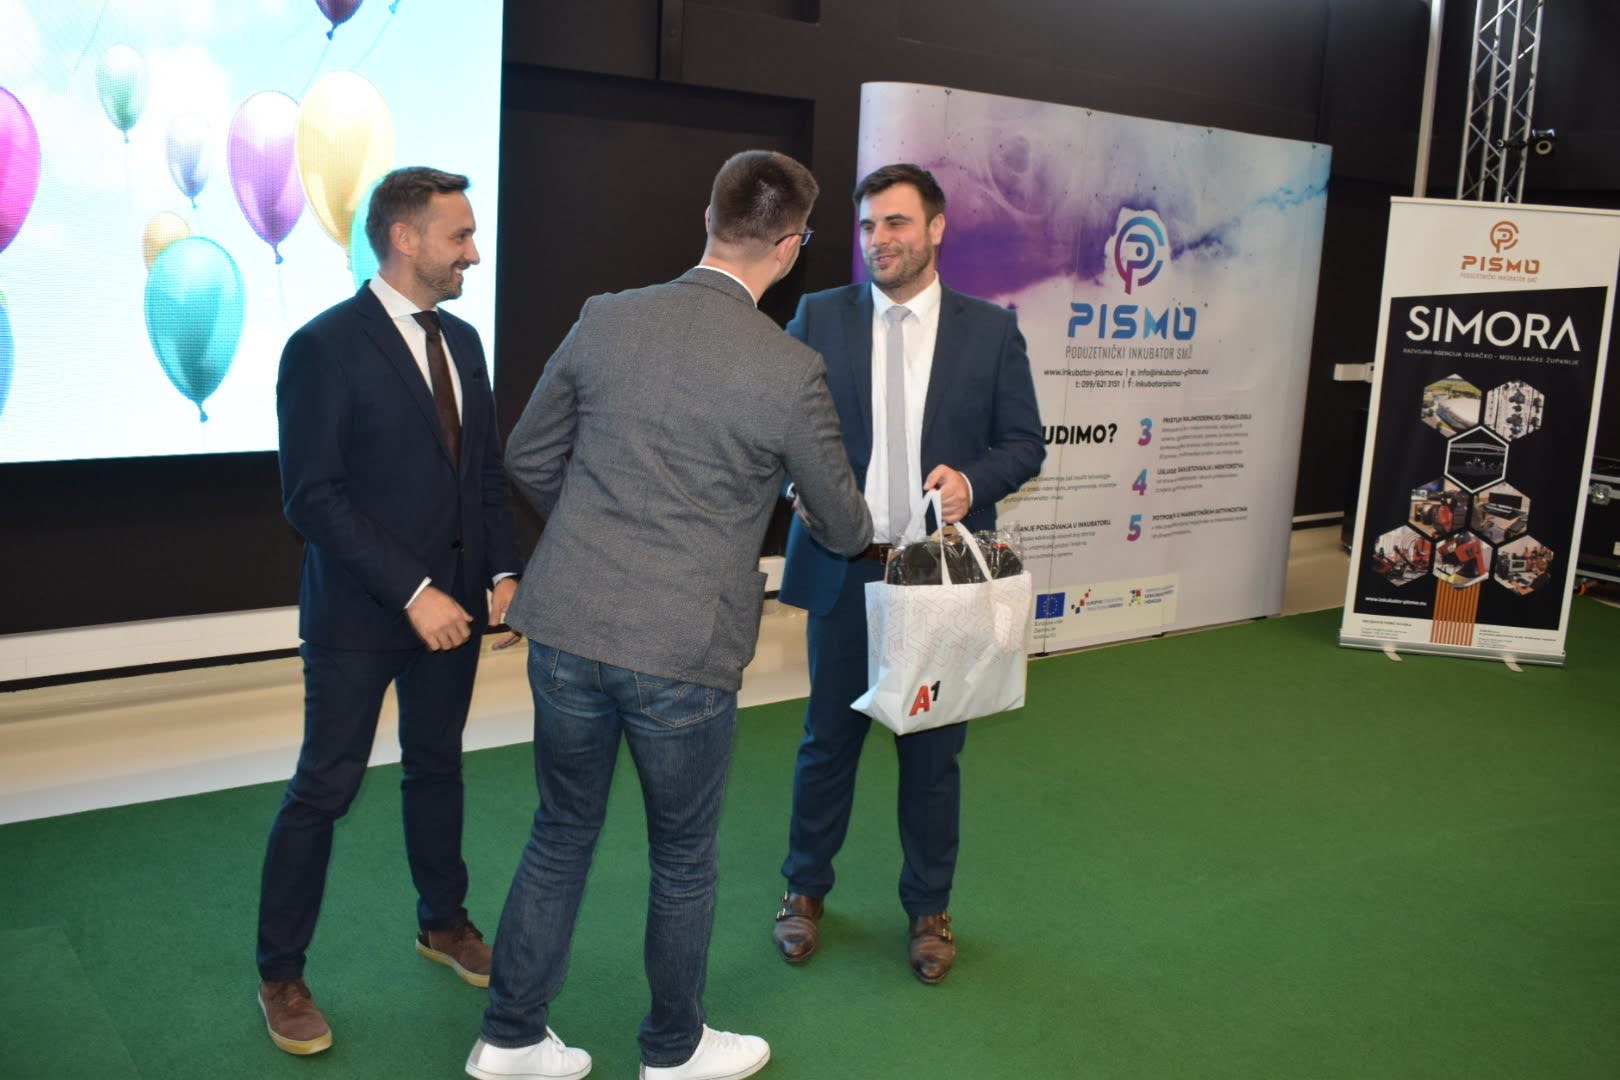 Župan Ivan Celjak je u ponedjeljak, 20. rujna 2021. godine, u Poduzetničkog inkubatora PISMO 2 u Novskoj sudjelovao na konferenciji za medije s temom javne objave i obilježavanja useljenja pedesetog korisnika u Poduzetnički inkubator PISMO.